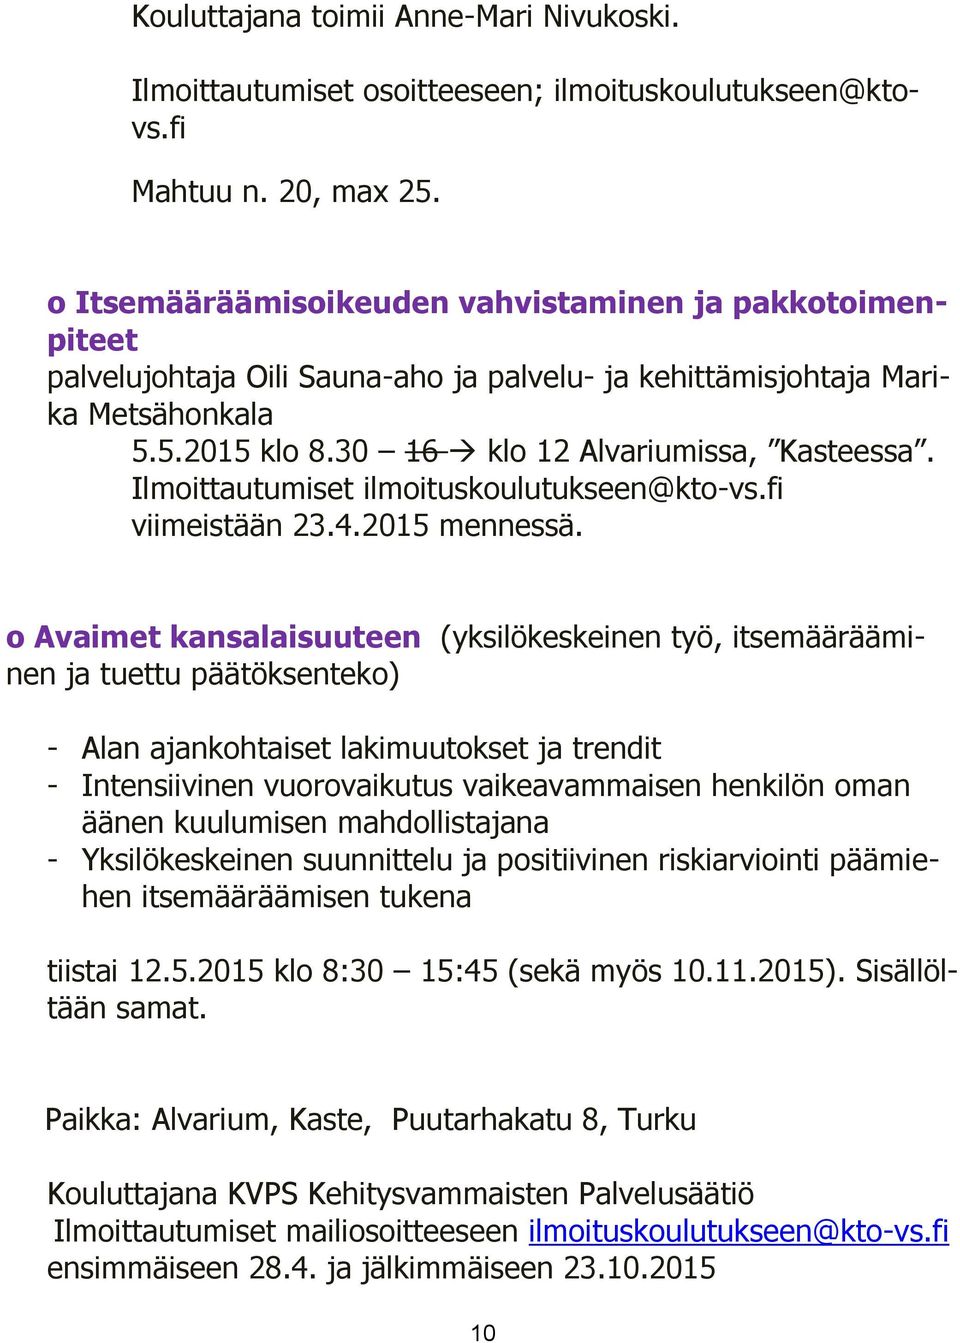 Ilmoittautumiset ilmoituskoulutukseen@kto-vs.fi viimeistään 23.4.2015 mennessä.